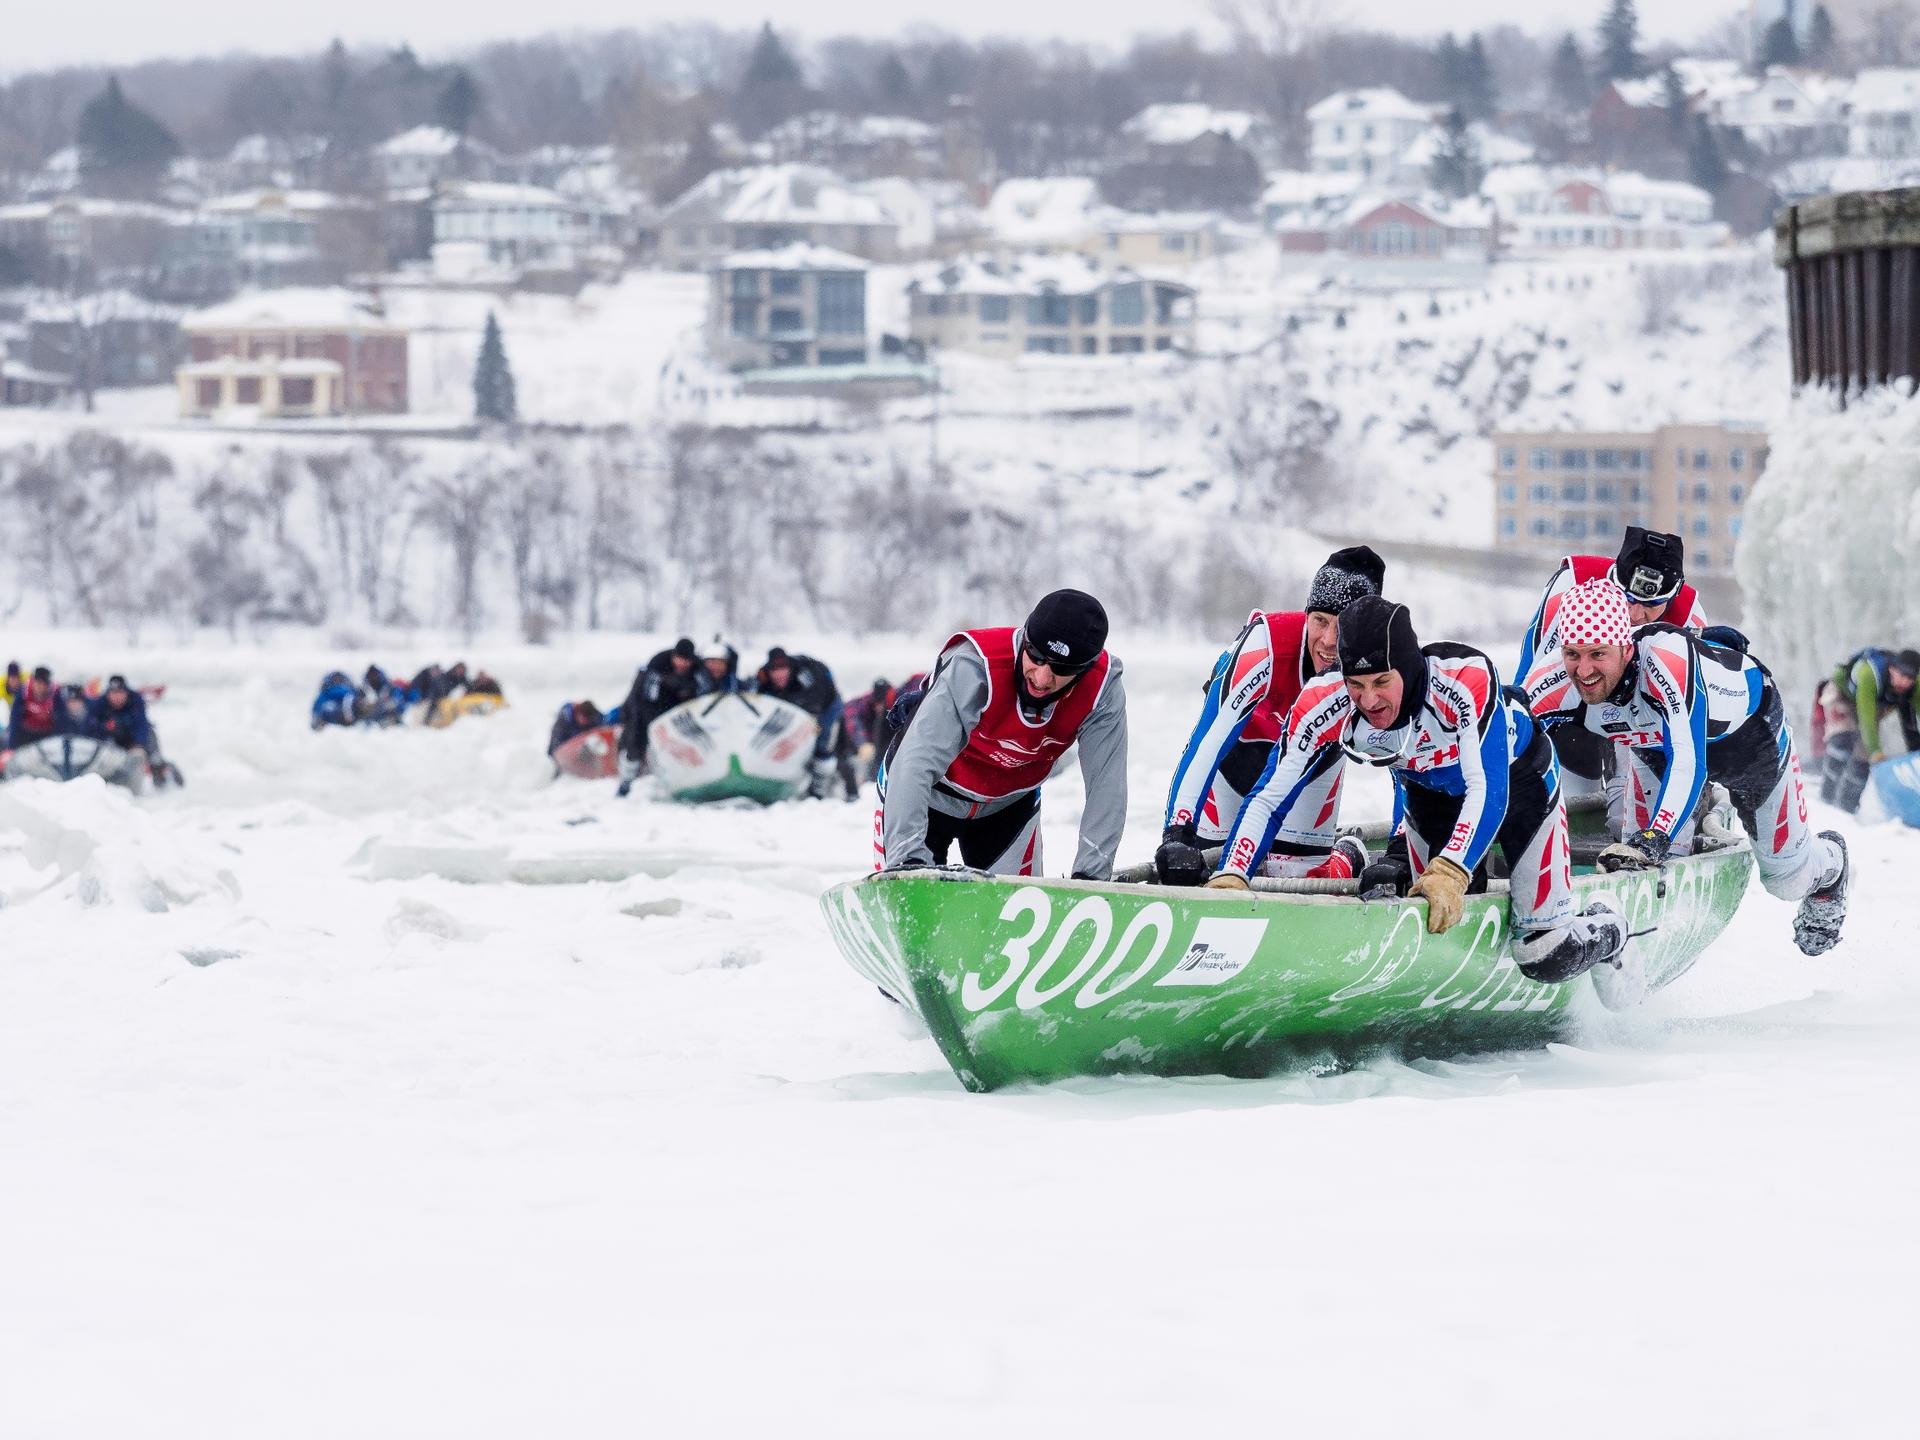 An ice canoe race 